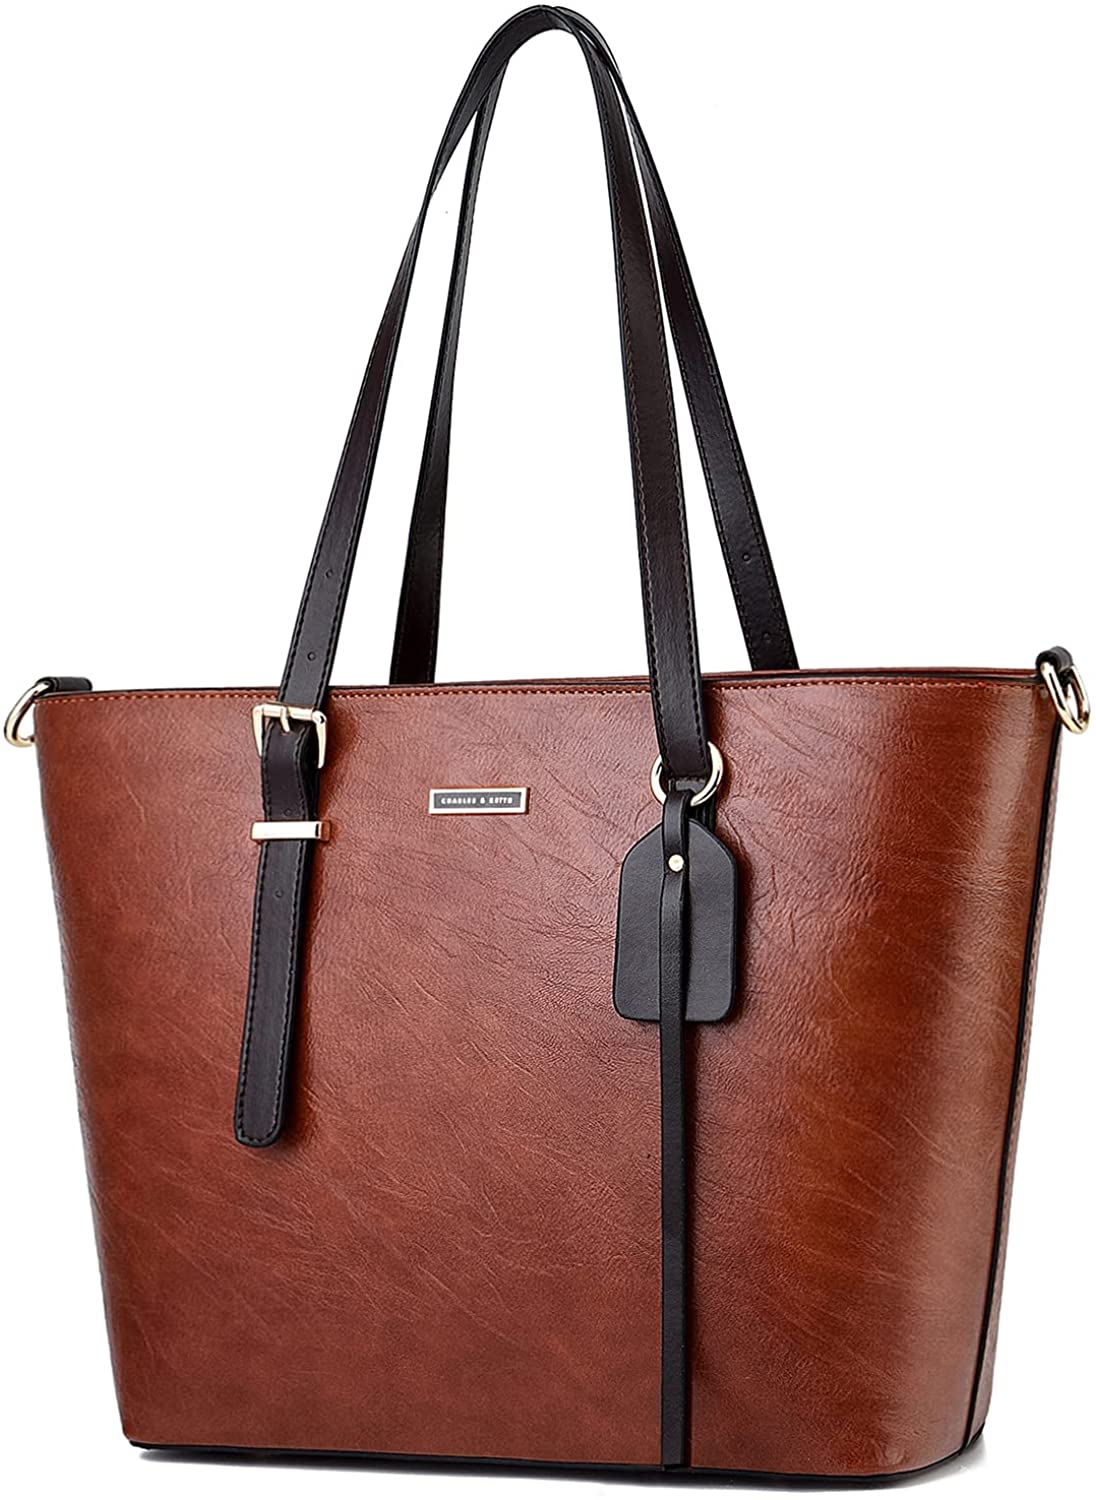 ALARION Women Top Handle Satchel Handbags Shoulder Bag Messenger 